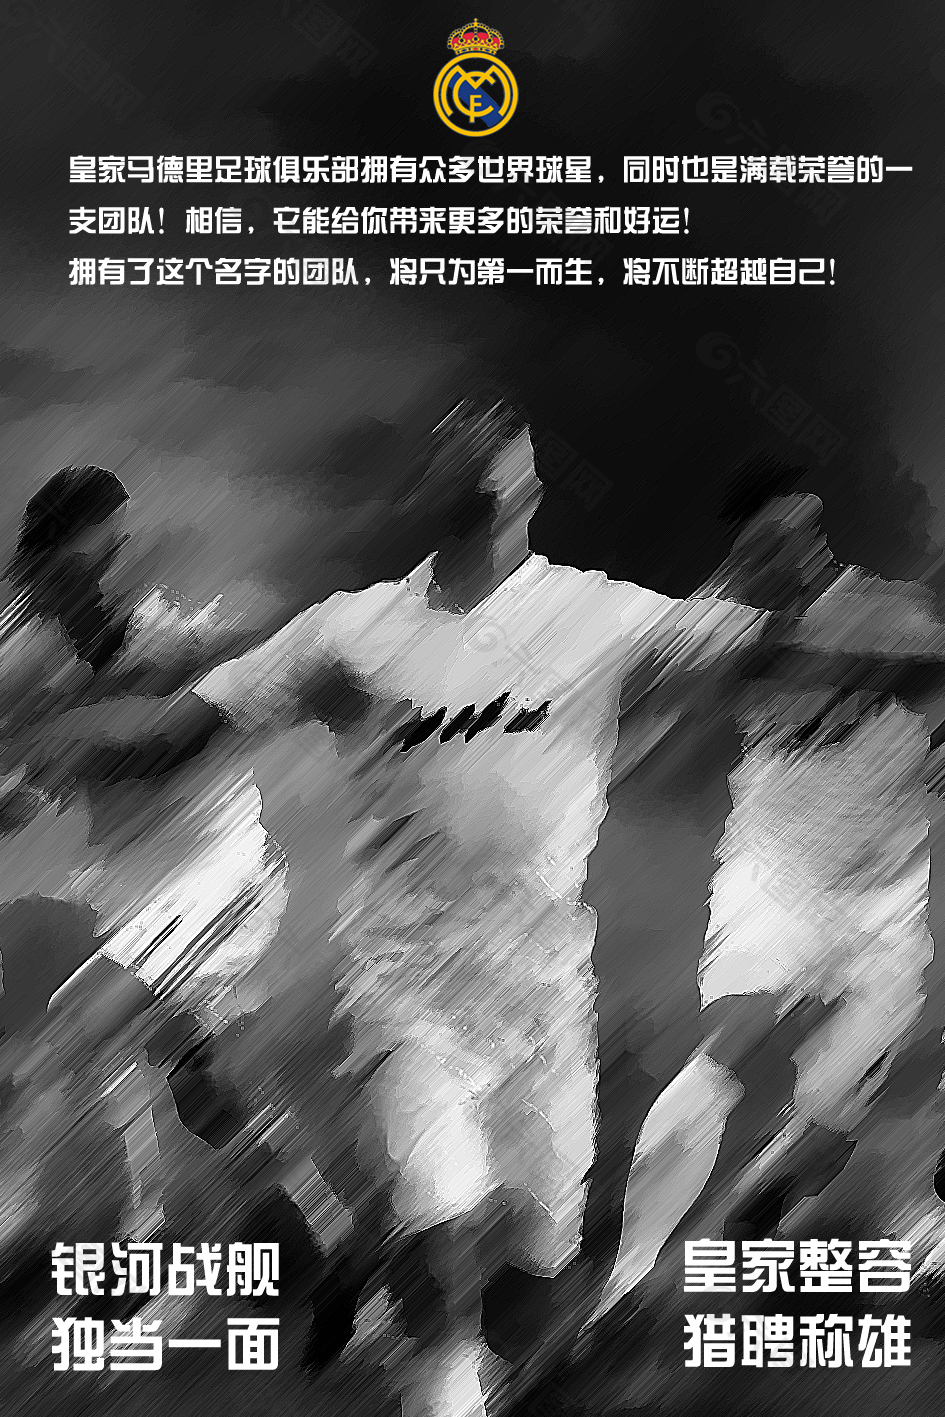 皇家足球队 动感宣传海报系列2